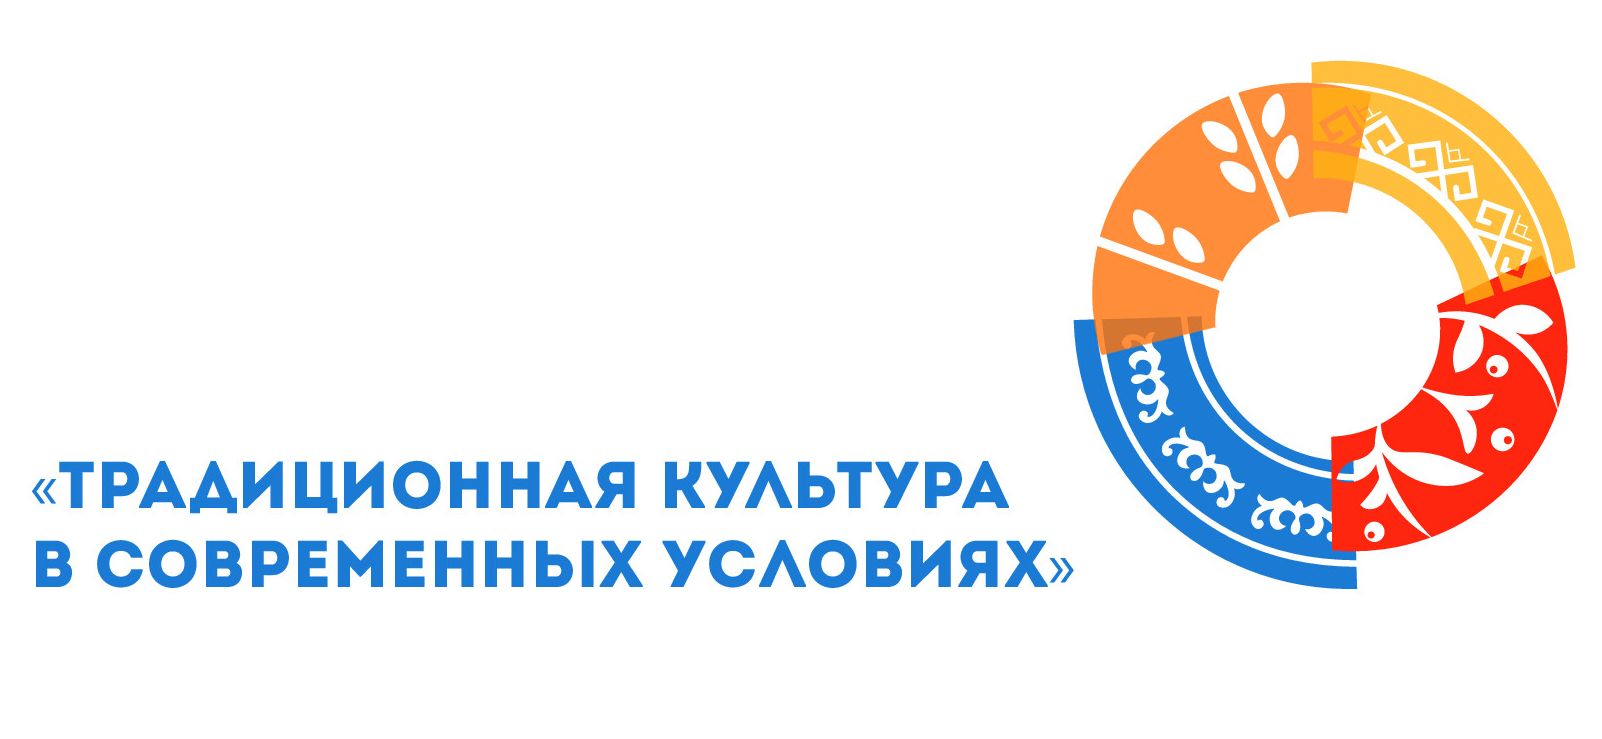 7-8 ноября в г. Барнауле впервые пройдет Съезд работников культурно-досуговых учреждений Алтайского края